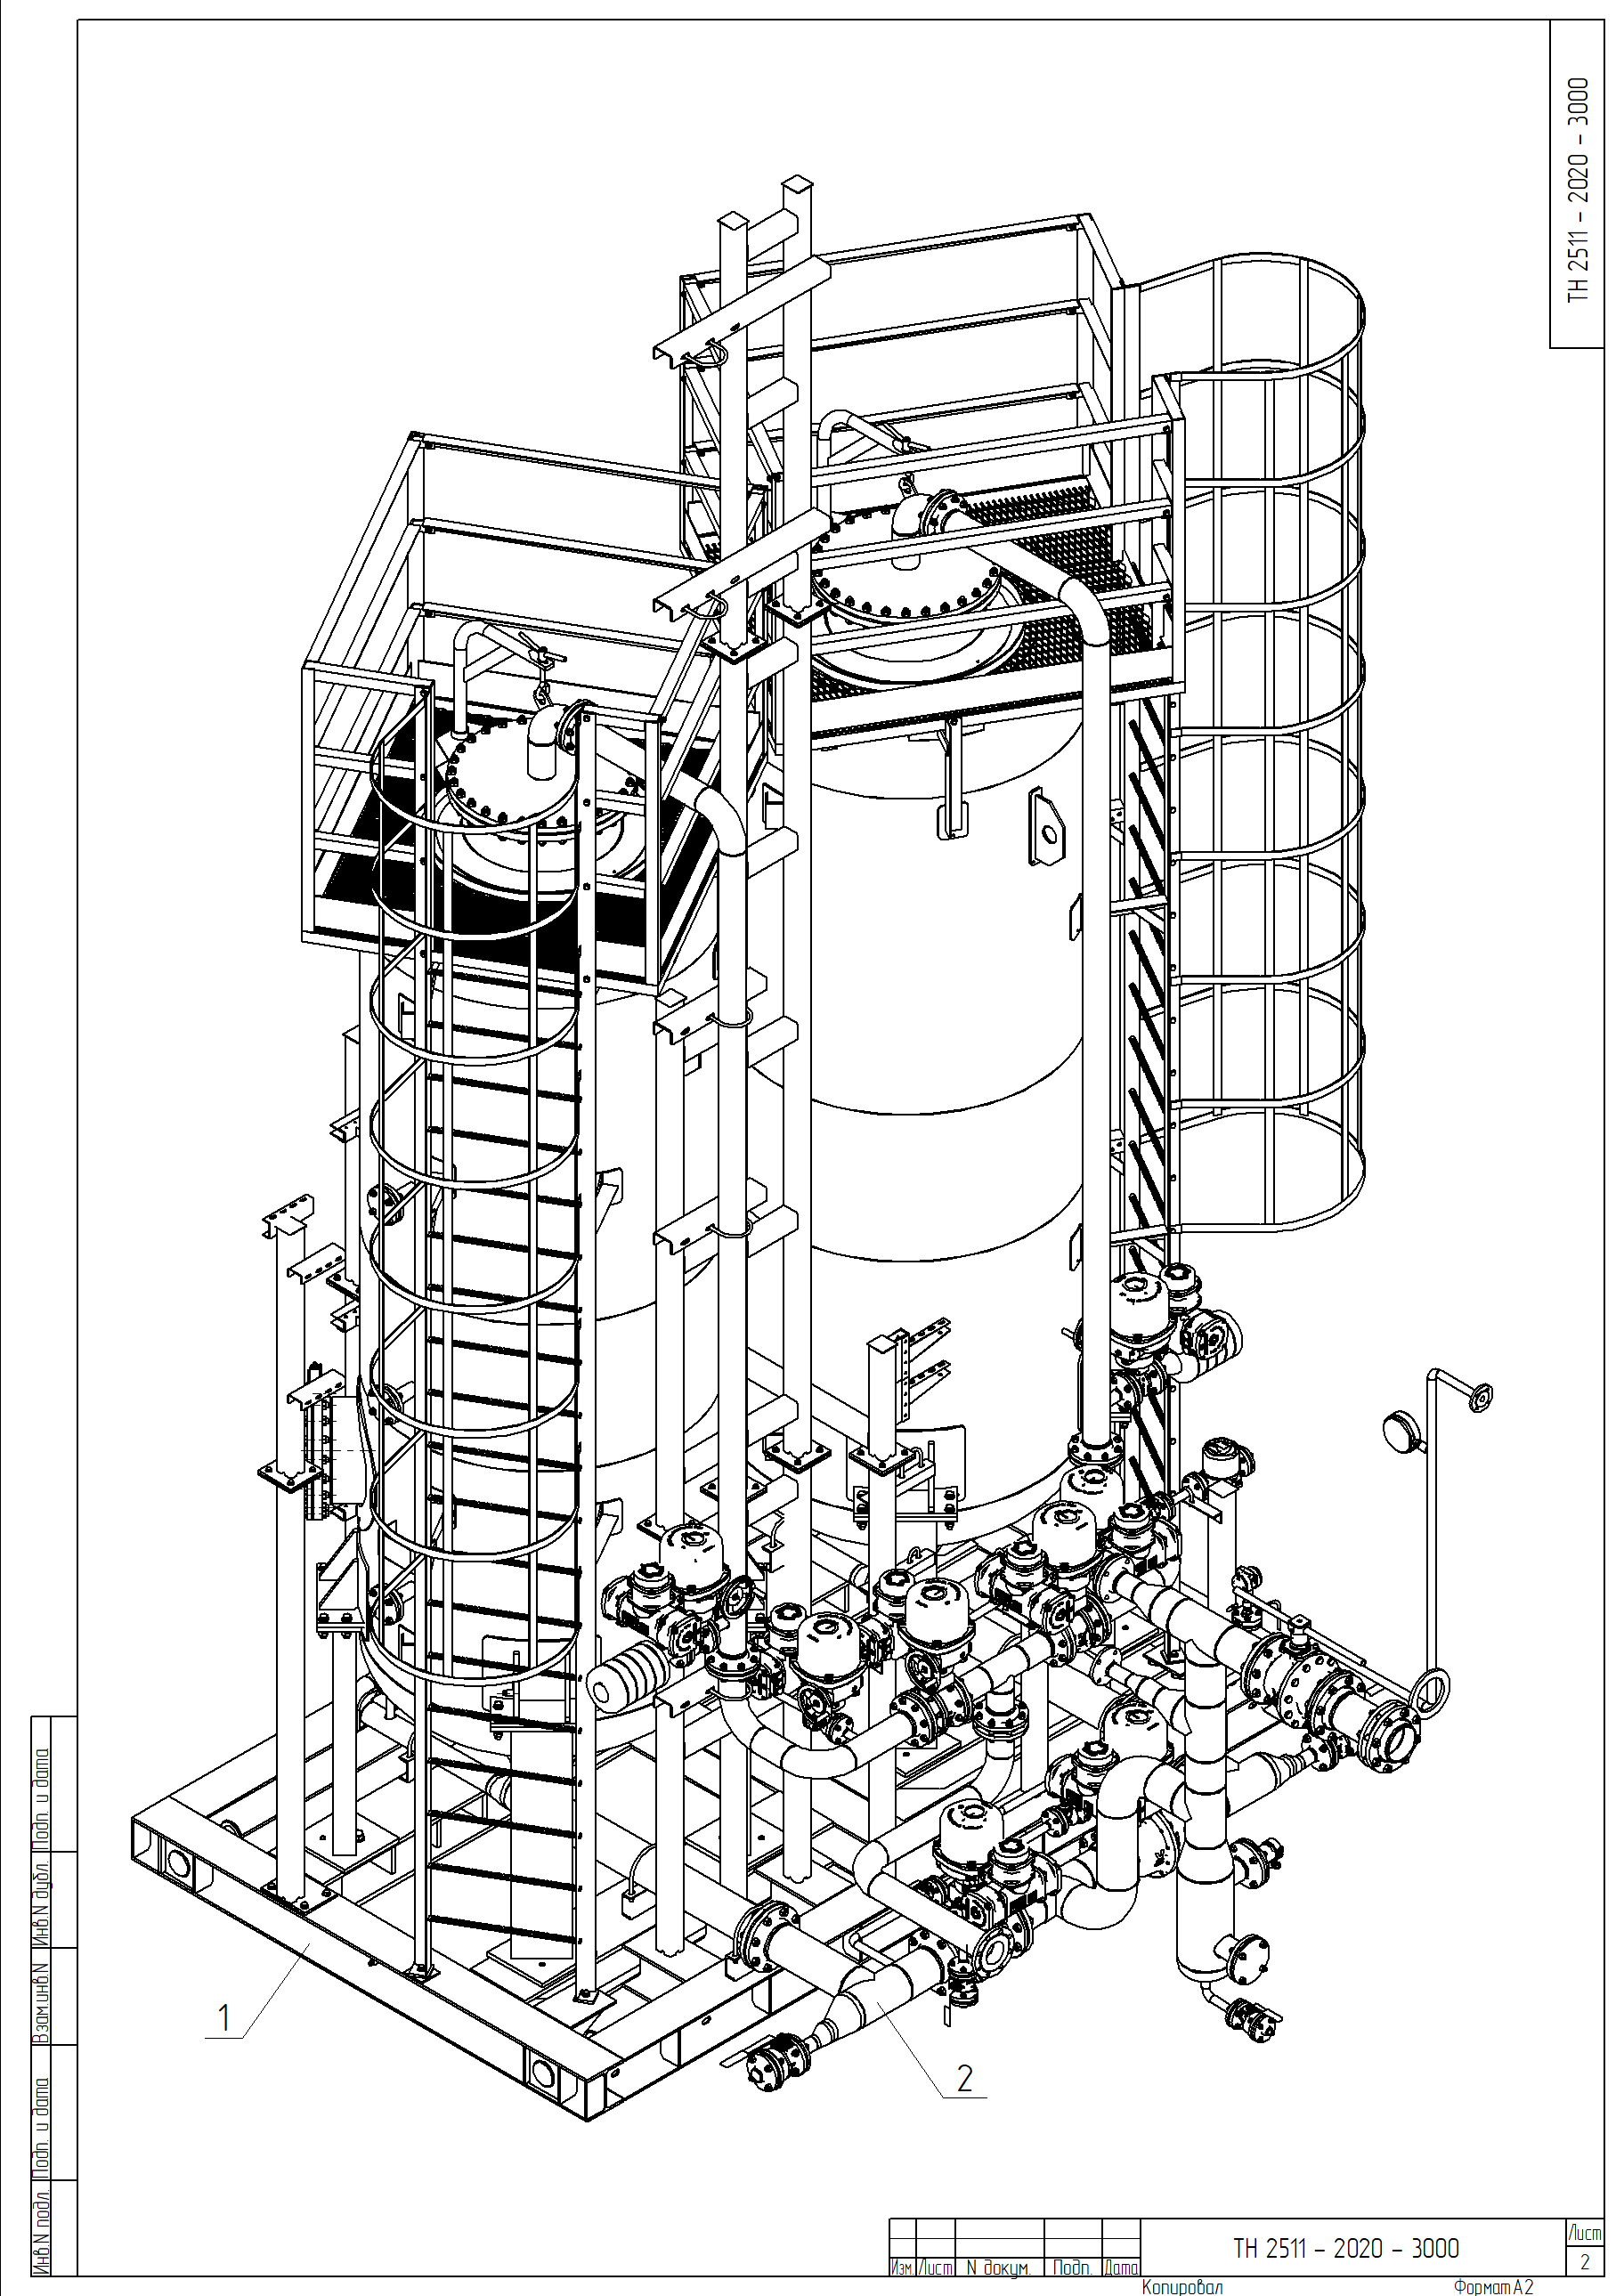 Рис. 4. Трубопроводная обвязка колонн с лестницами и площадками обслуживания. Показана изометрическая проекция для наглядности и понимания конструкции аппарата